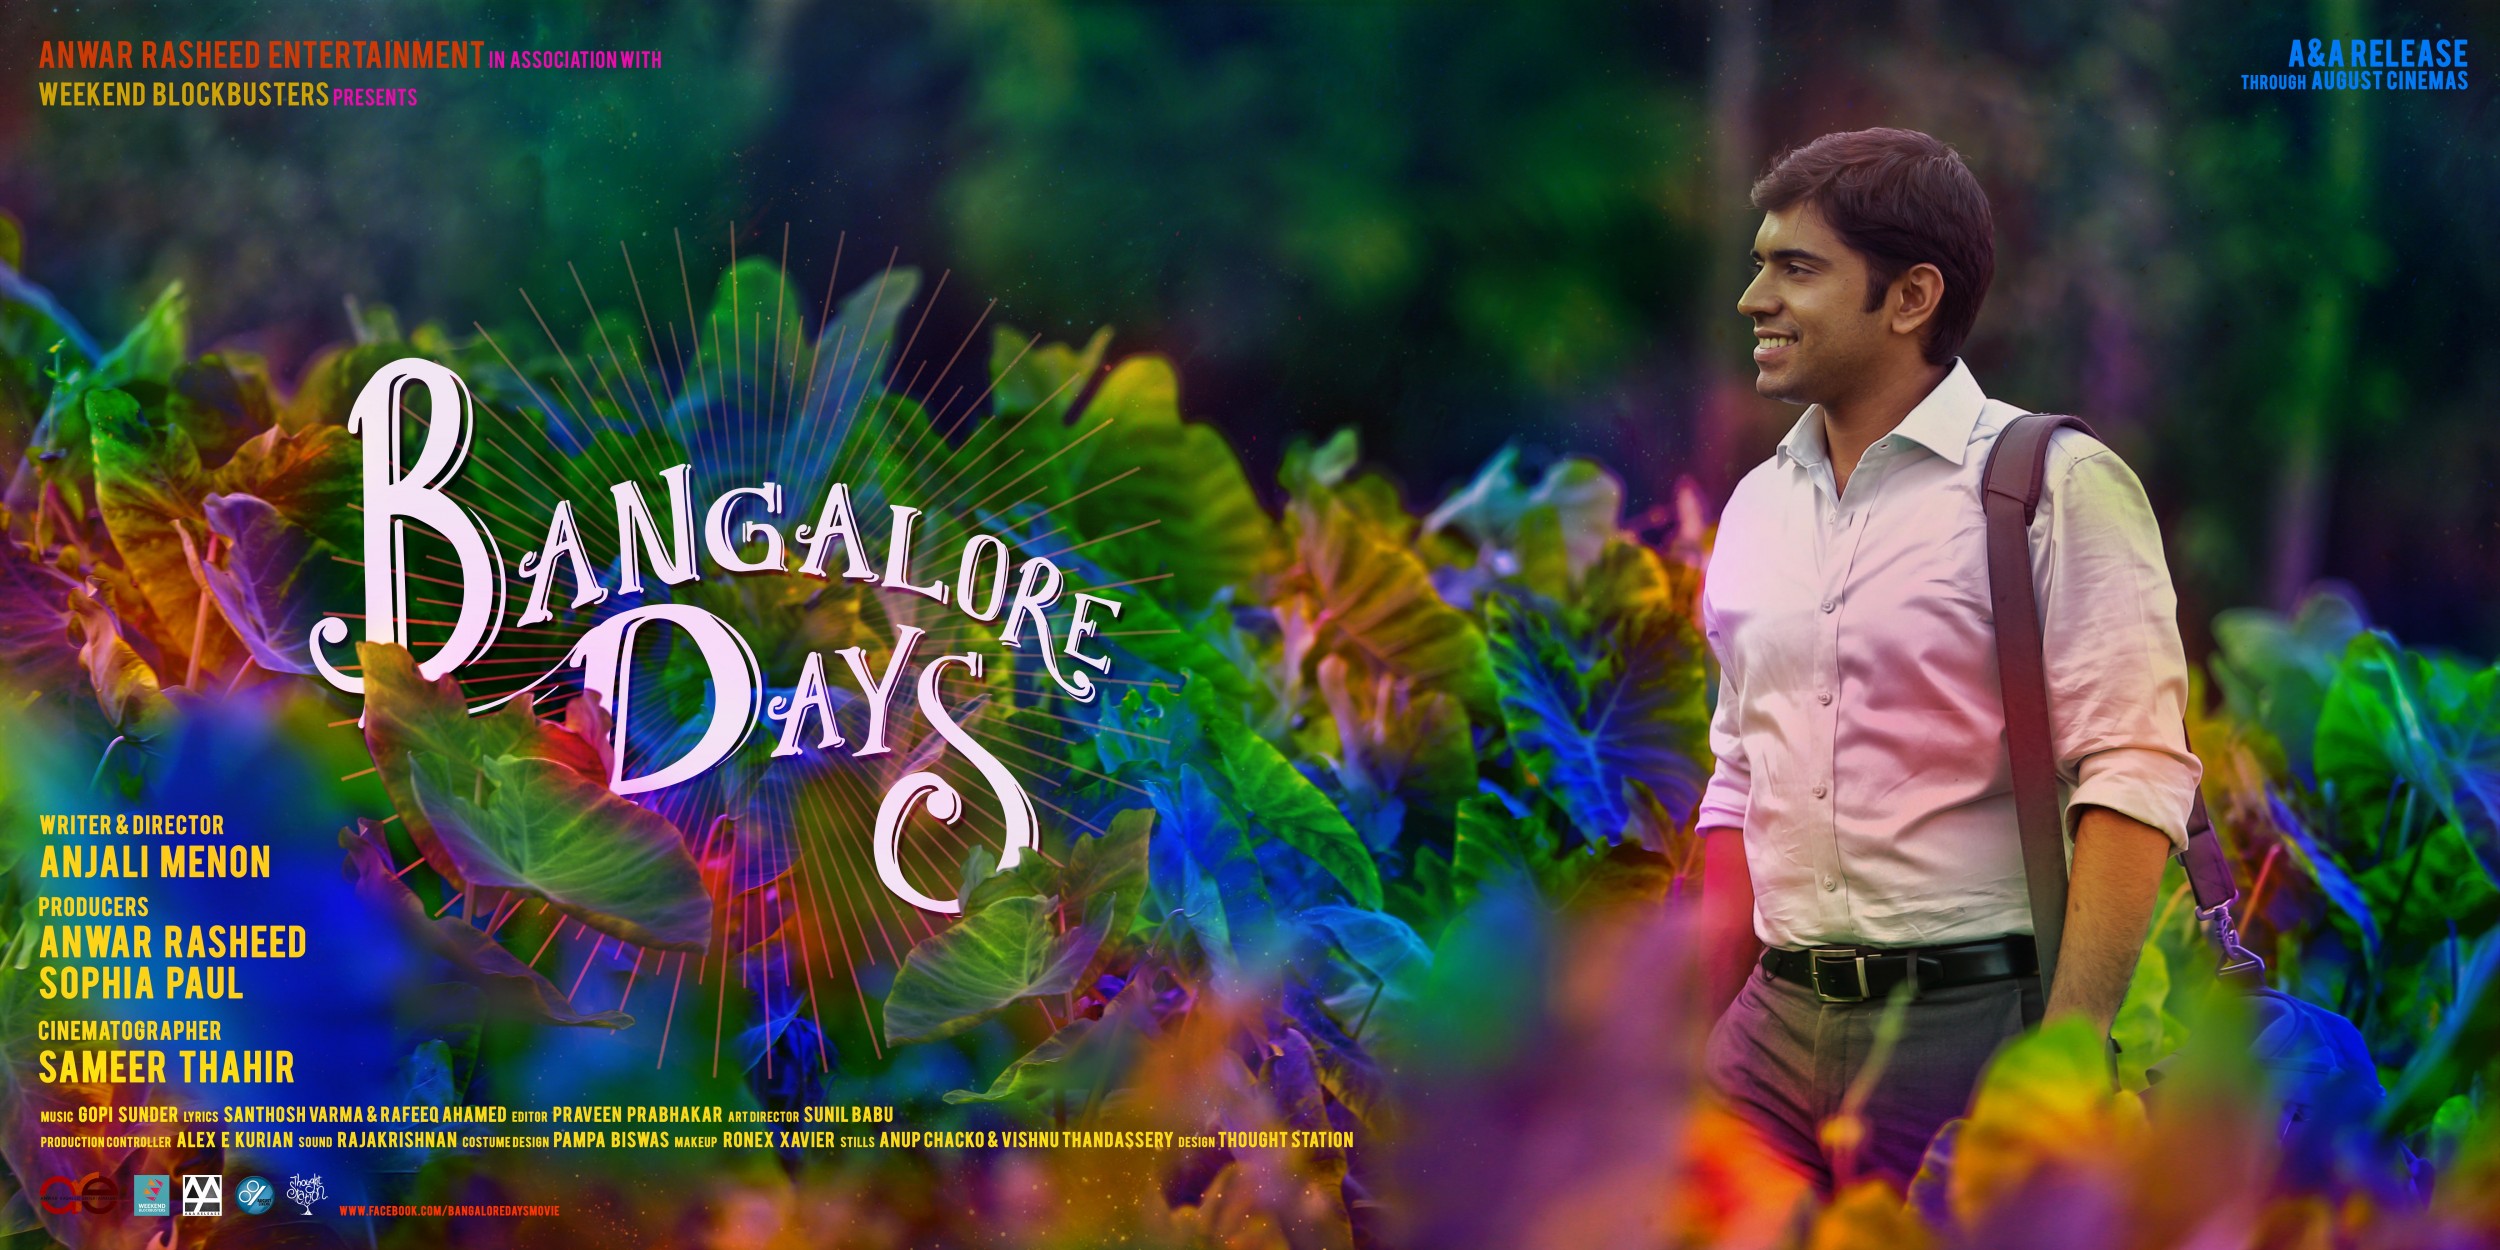 Mega Sized Movie Poster Image for Bangalore Days (#5 of 7)